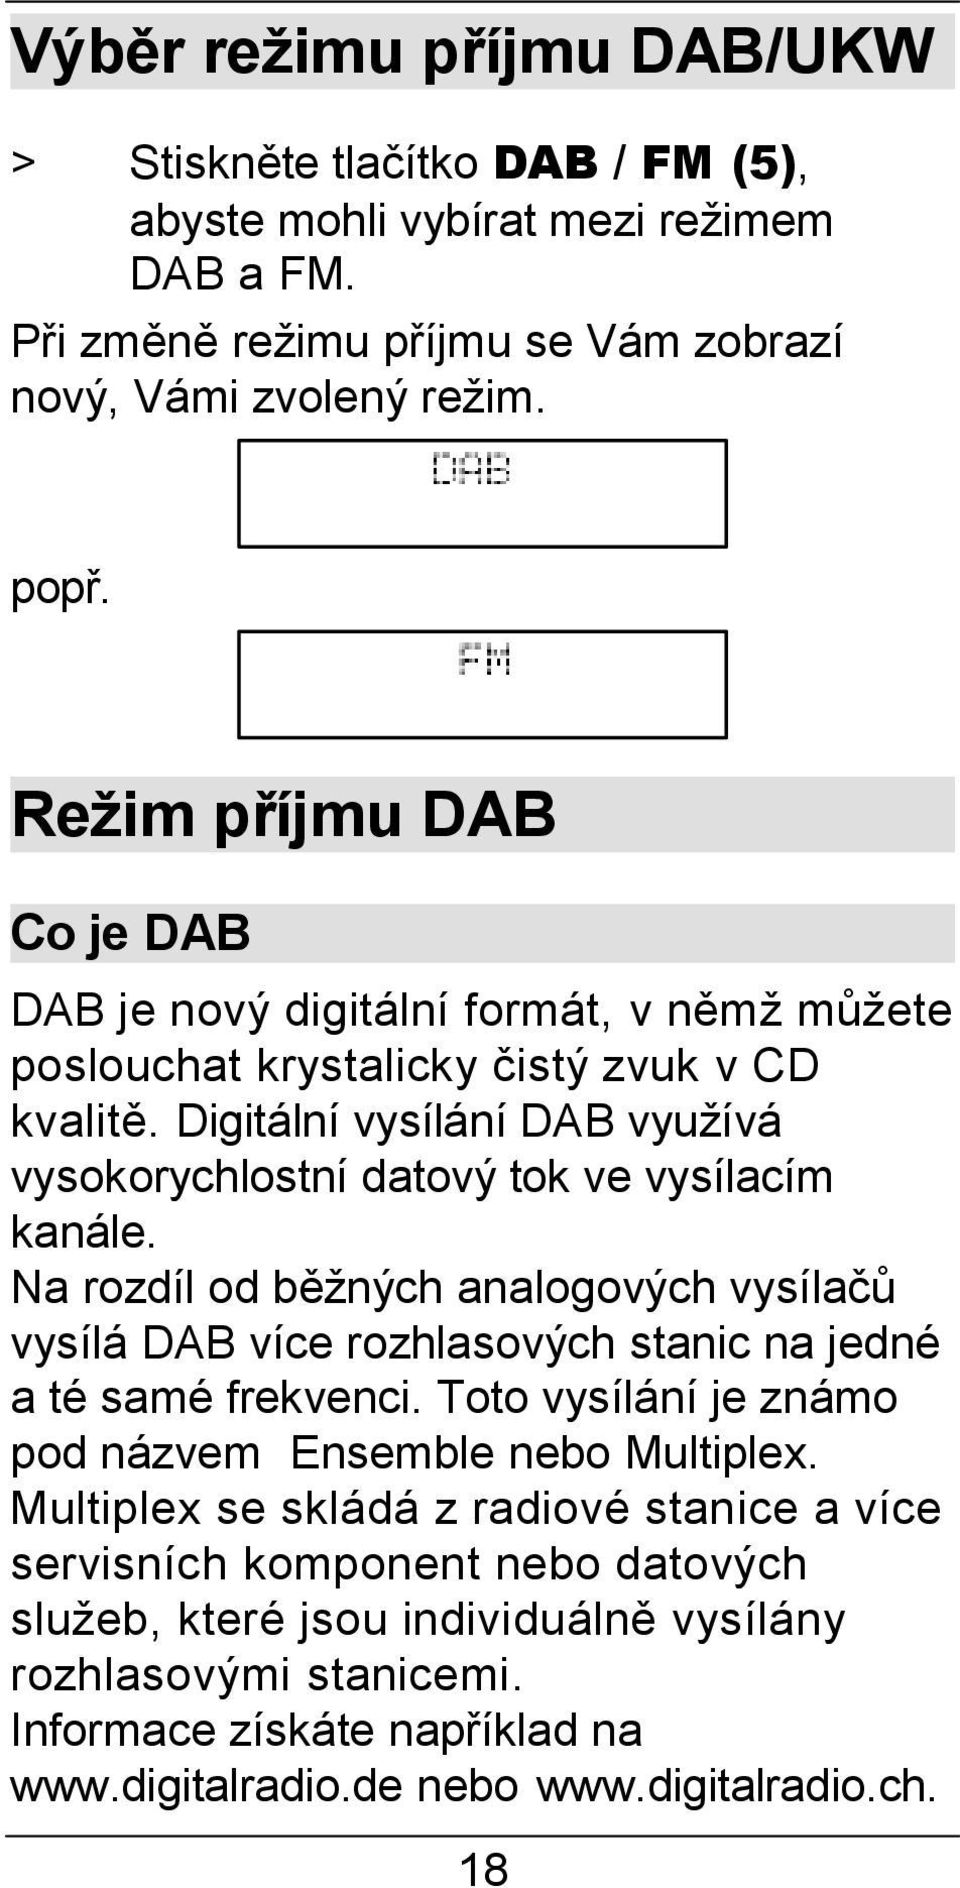 Digitální vysílání DAB využívá vysokorychlostní datový tok ve vysílacím kanále. Na rozdíl od běžných analogových vysílačů vysílá DAB více rozhlasových stanic na jedné a té samé frekvenci.